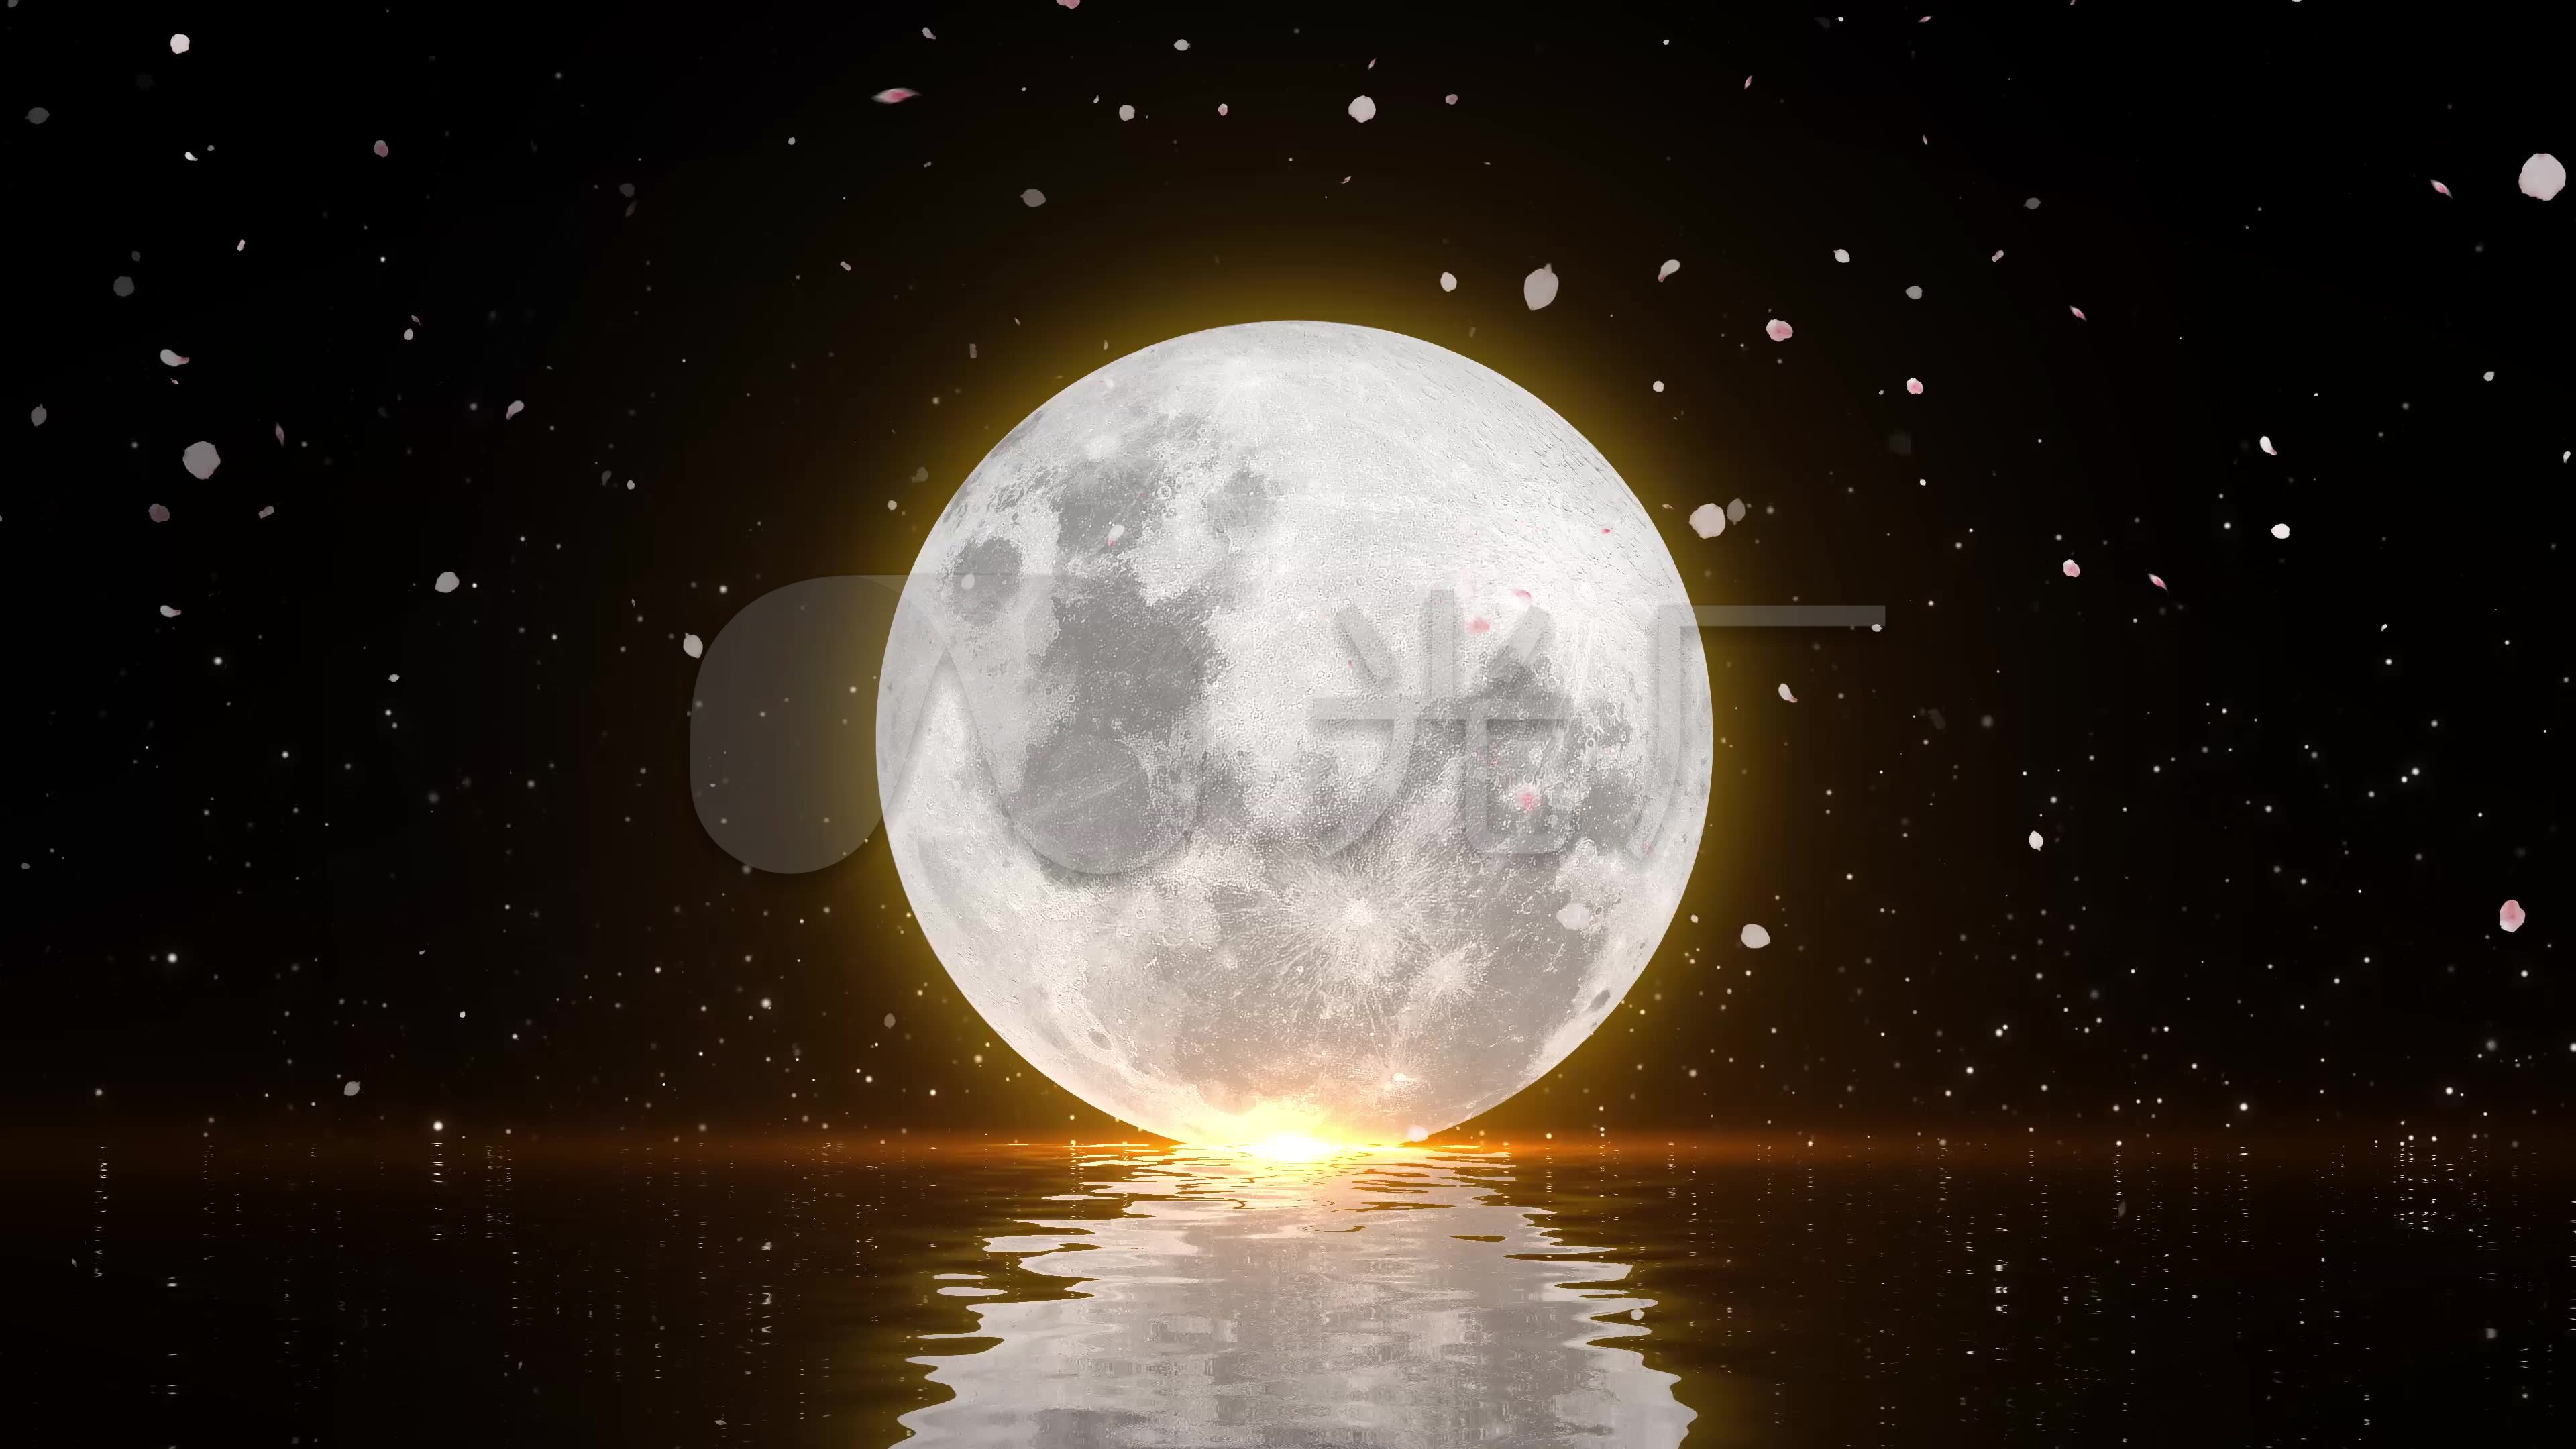 月光 夜景 摄影壁纸_风景_太平洋科技